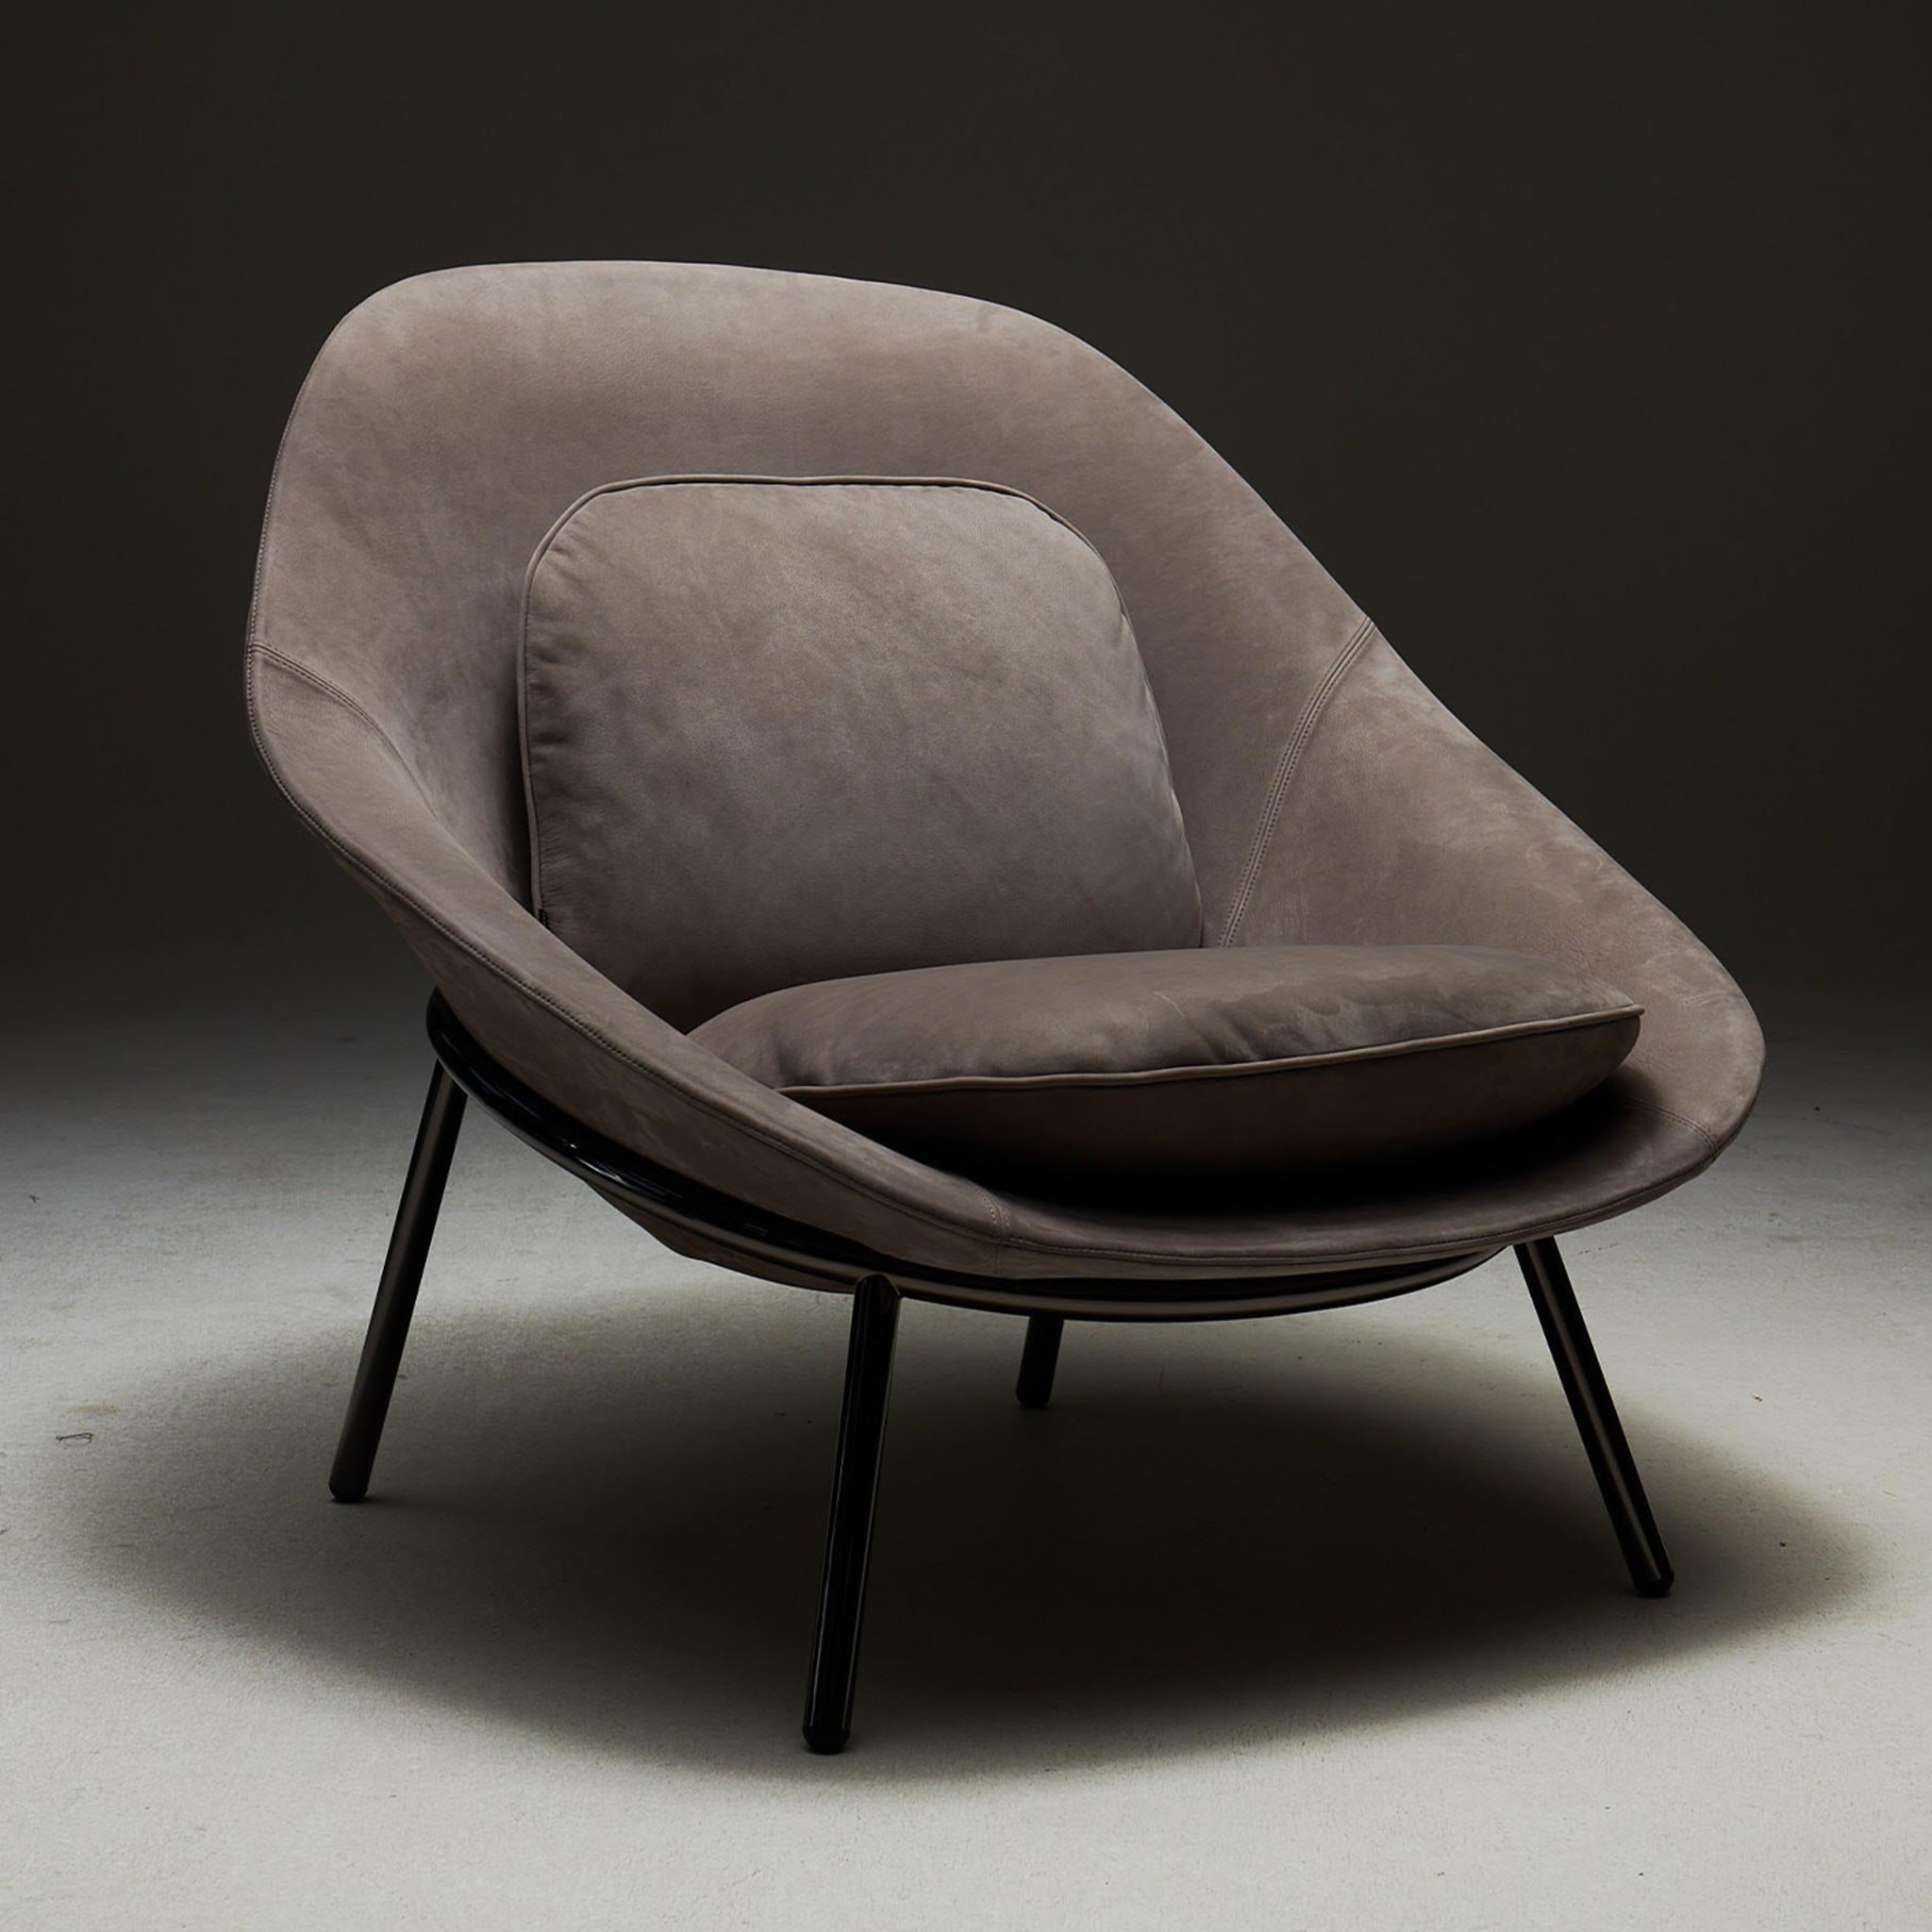 Amphora Lounge Chair by Noé Duchaufour-Lawrance - Alternative view 1